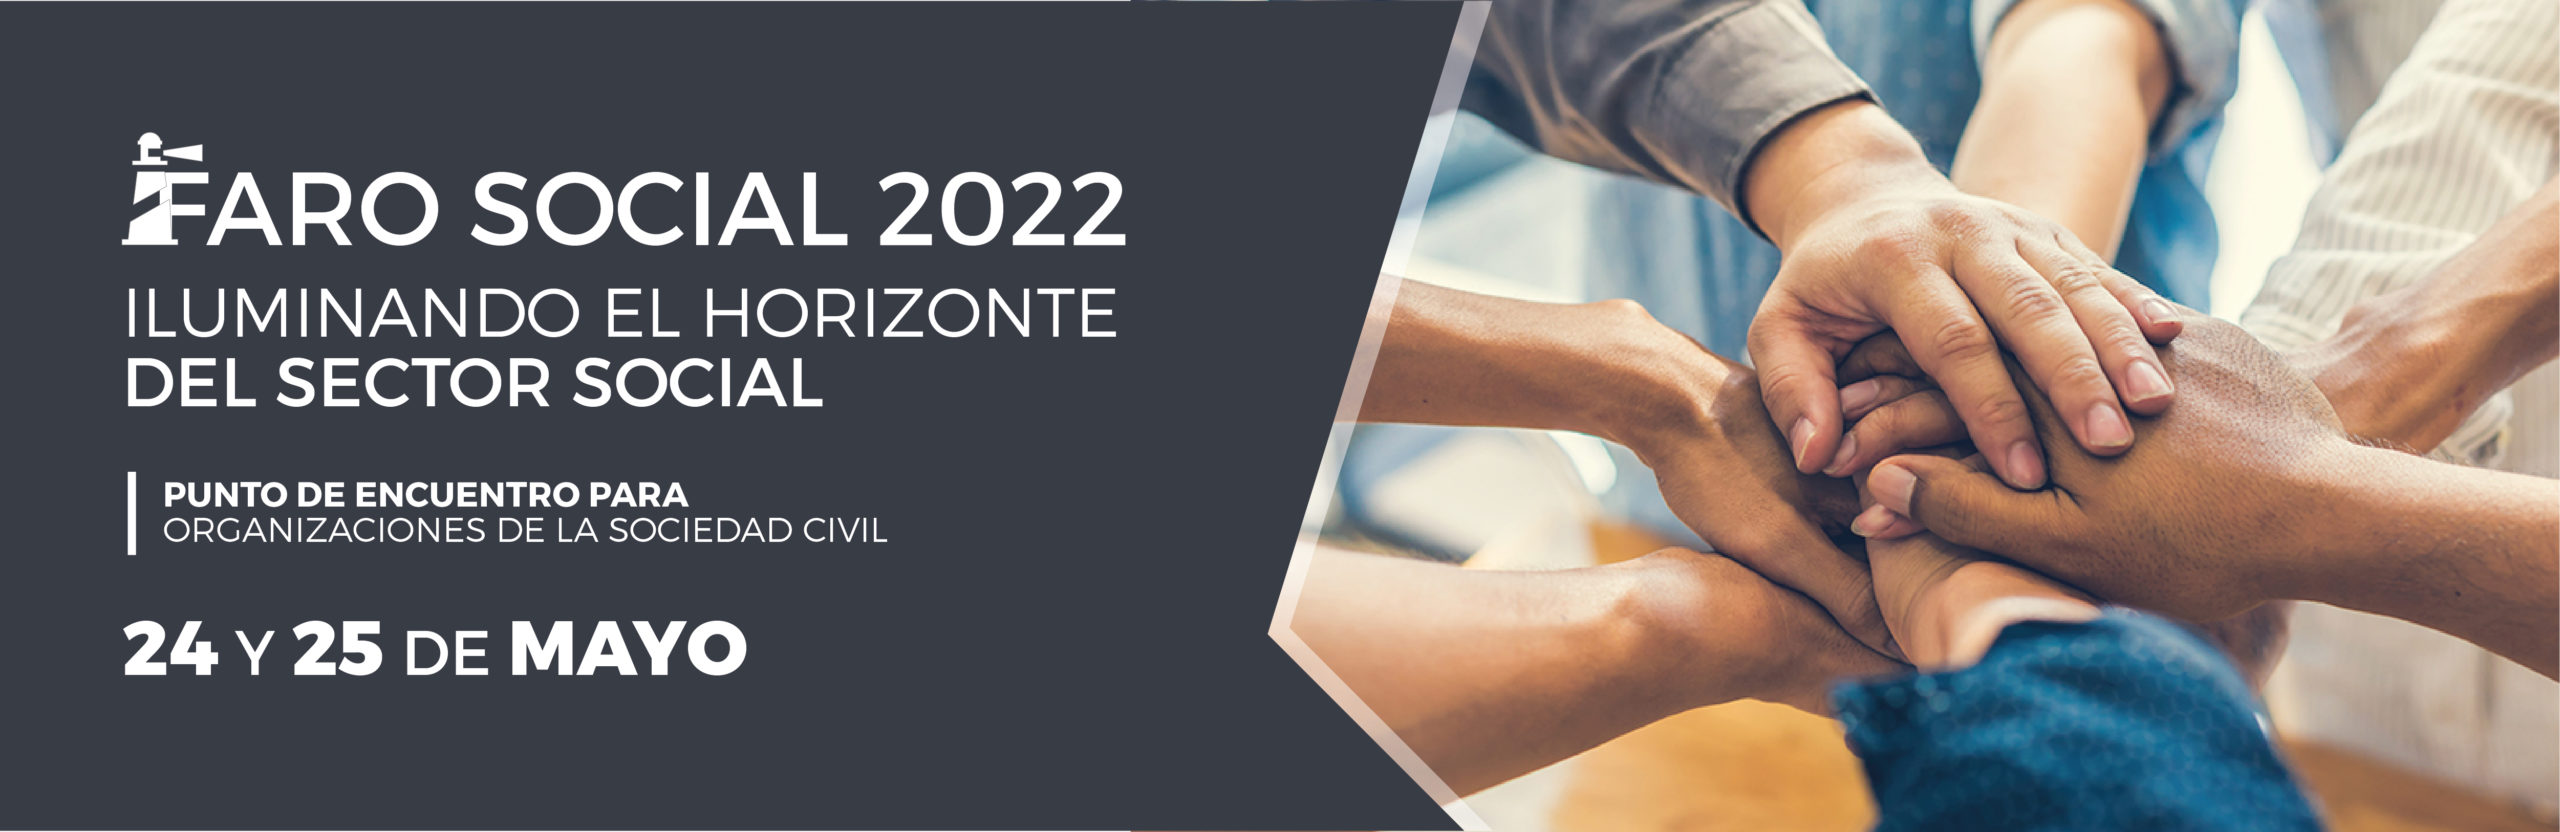 Faro Social 2022: Iluminando el horizonte del sector social